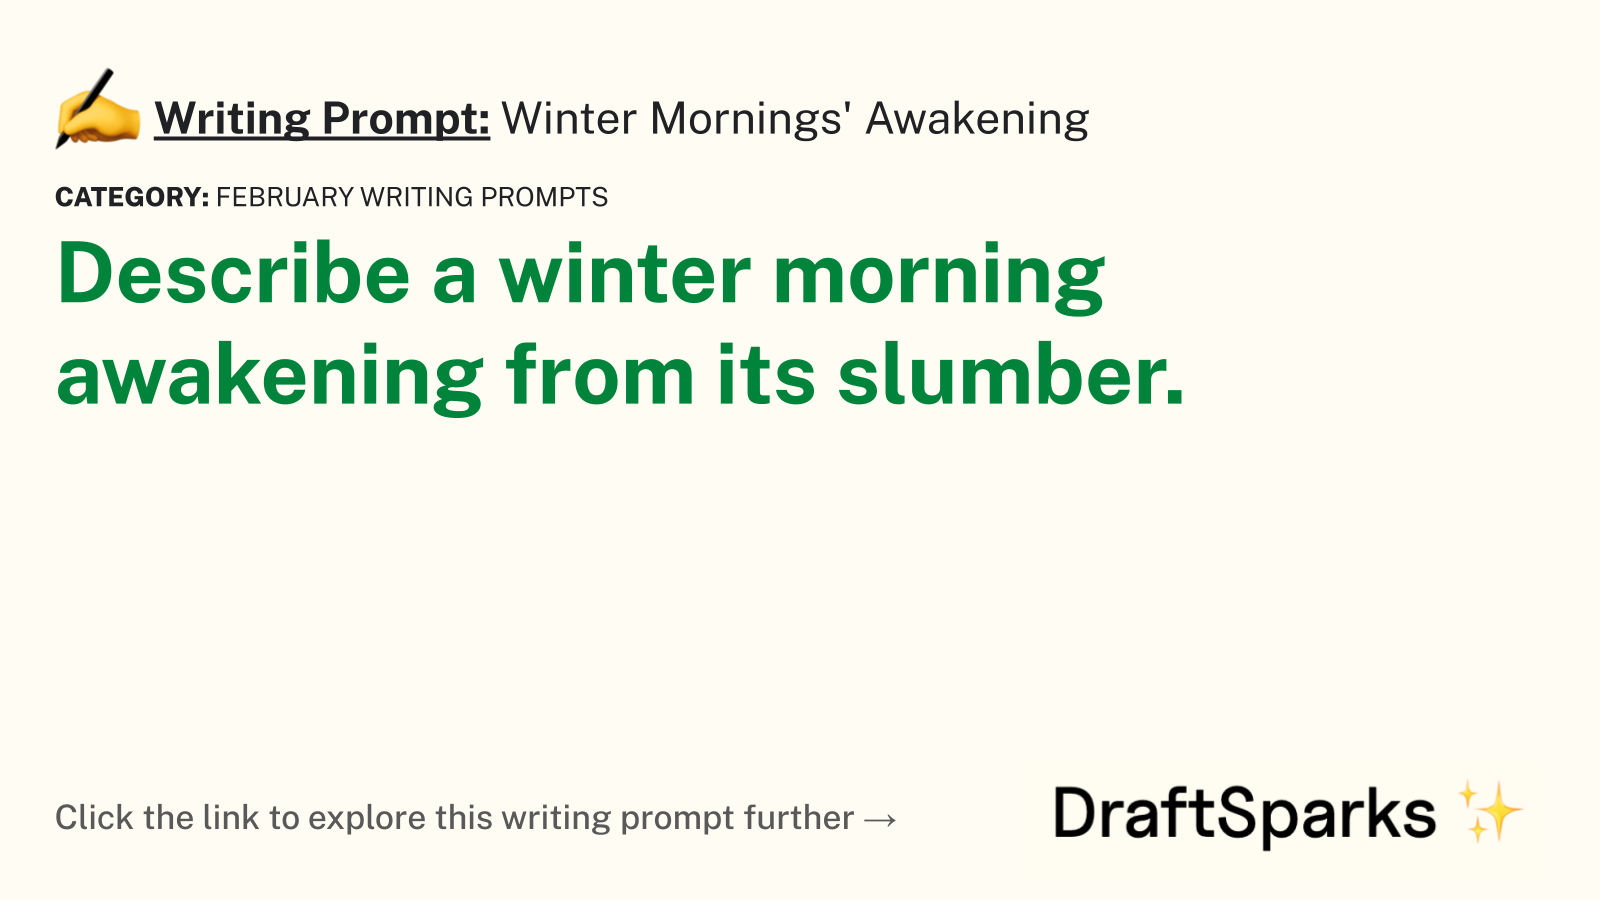 Winter Mornings’ Awakening